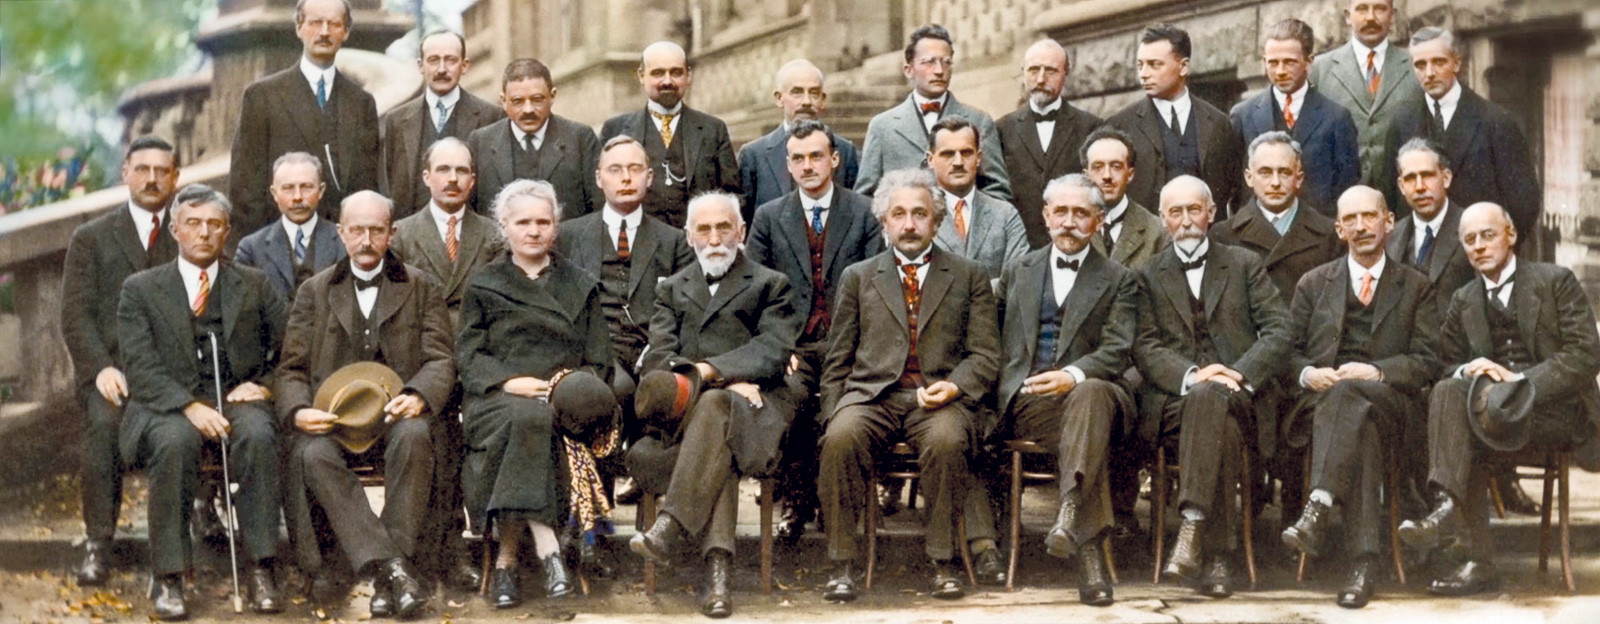 Conferencia de Solvay sobre mecánica cuántica, 1927. Fotografía de Benjamin Couprie, Institut International de Physique Solvay, Bélgica